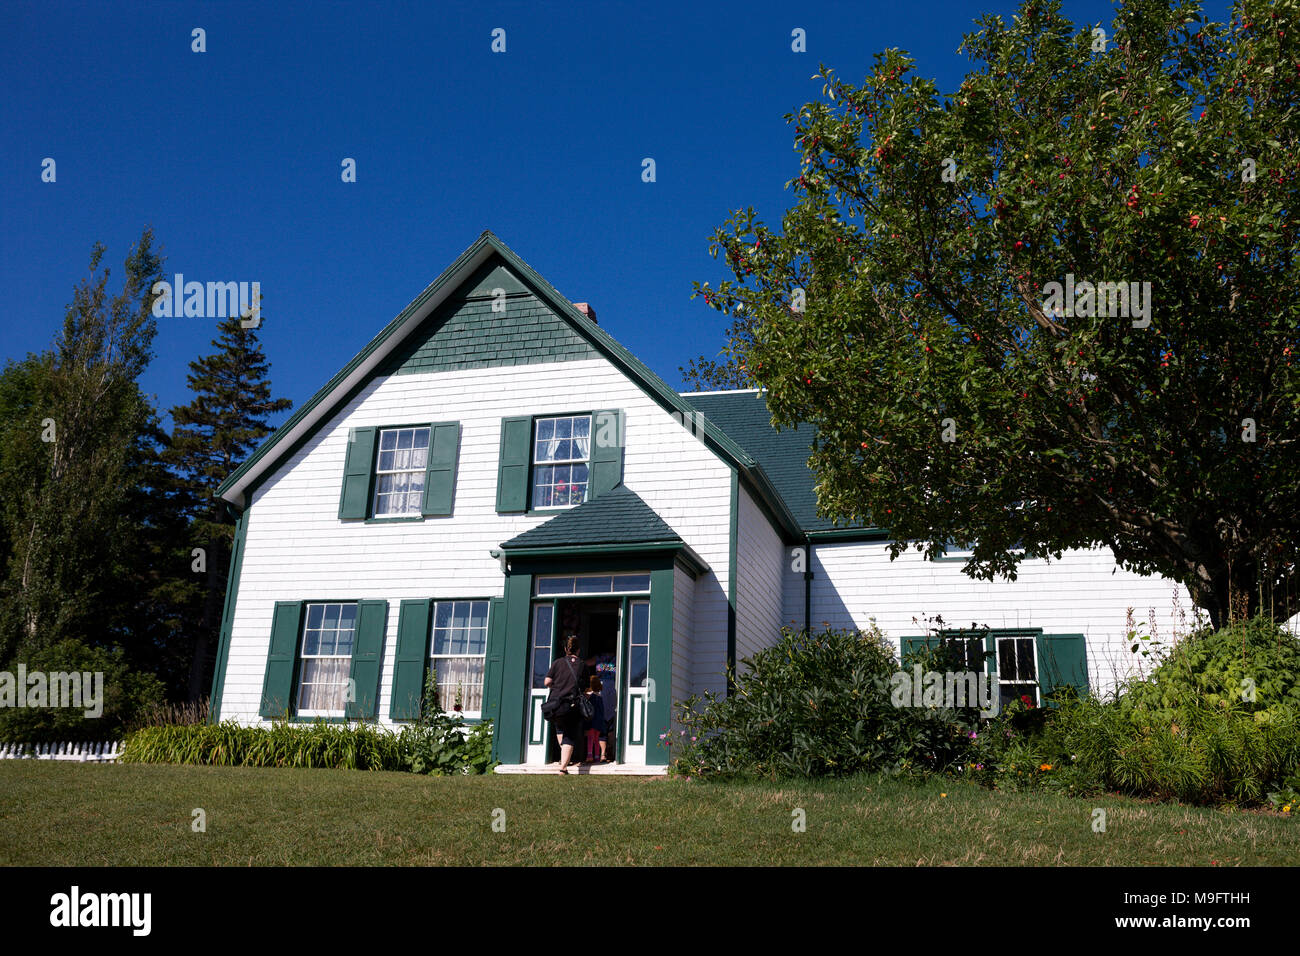 L'iconico Green Gables farm house da Lucy Maud Montgomery romanzo Anne di Green Gables. Foto Stock